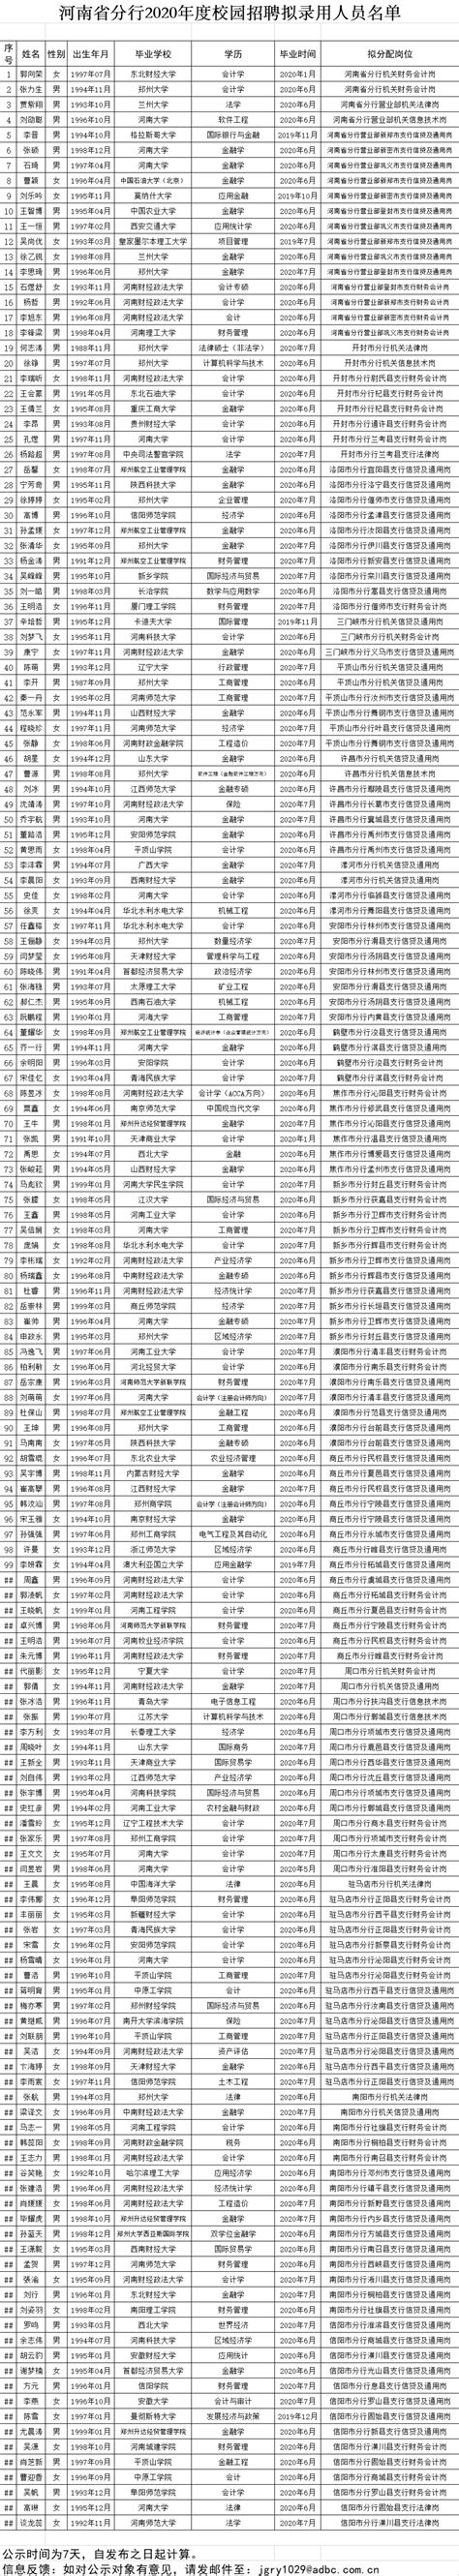 河南2020高招网上志愿填报模拟演练操作手册发布-大河网